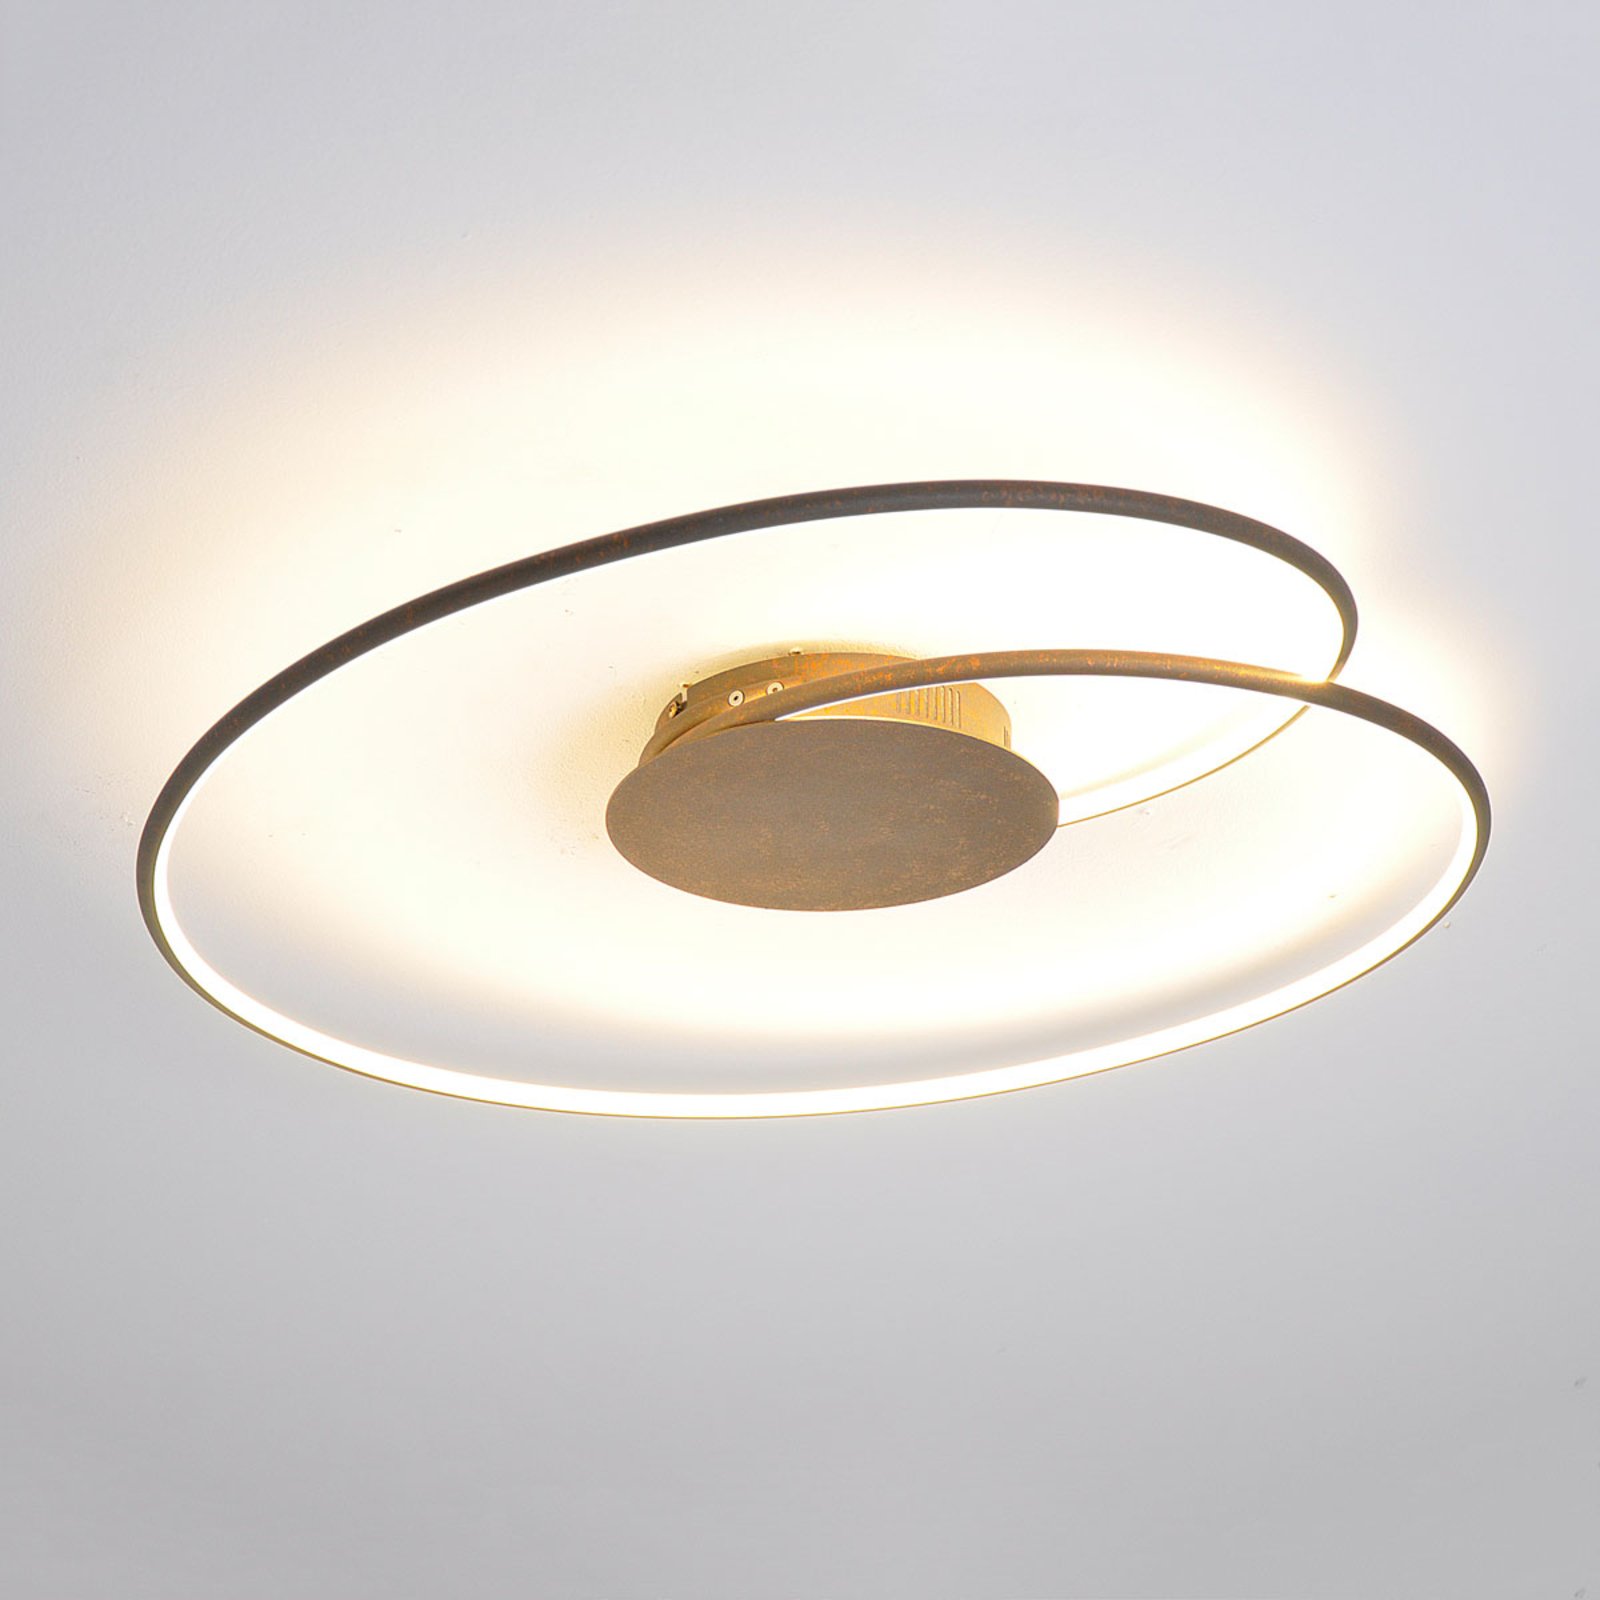 Stropné LED svietidlo Joline hrdzavo-hnedé 74 cm